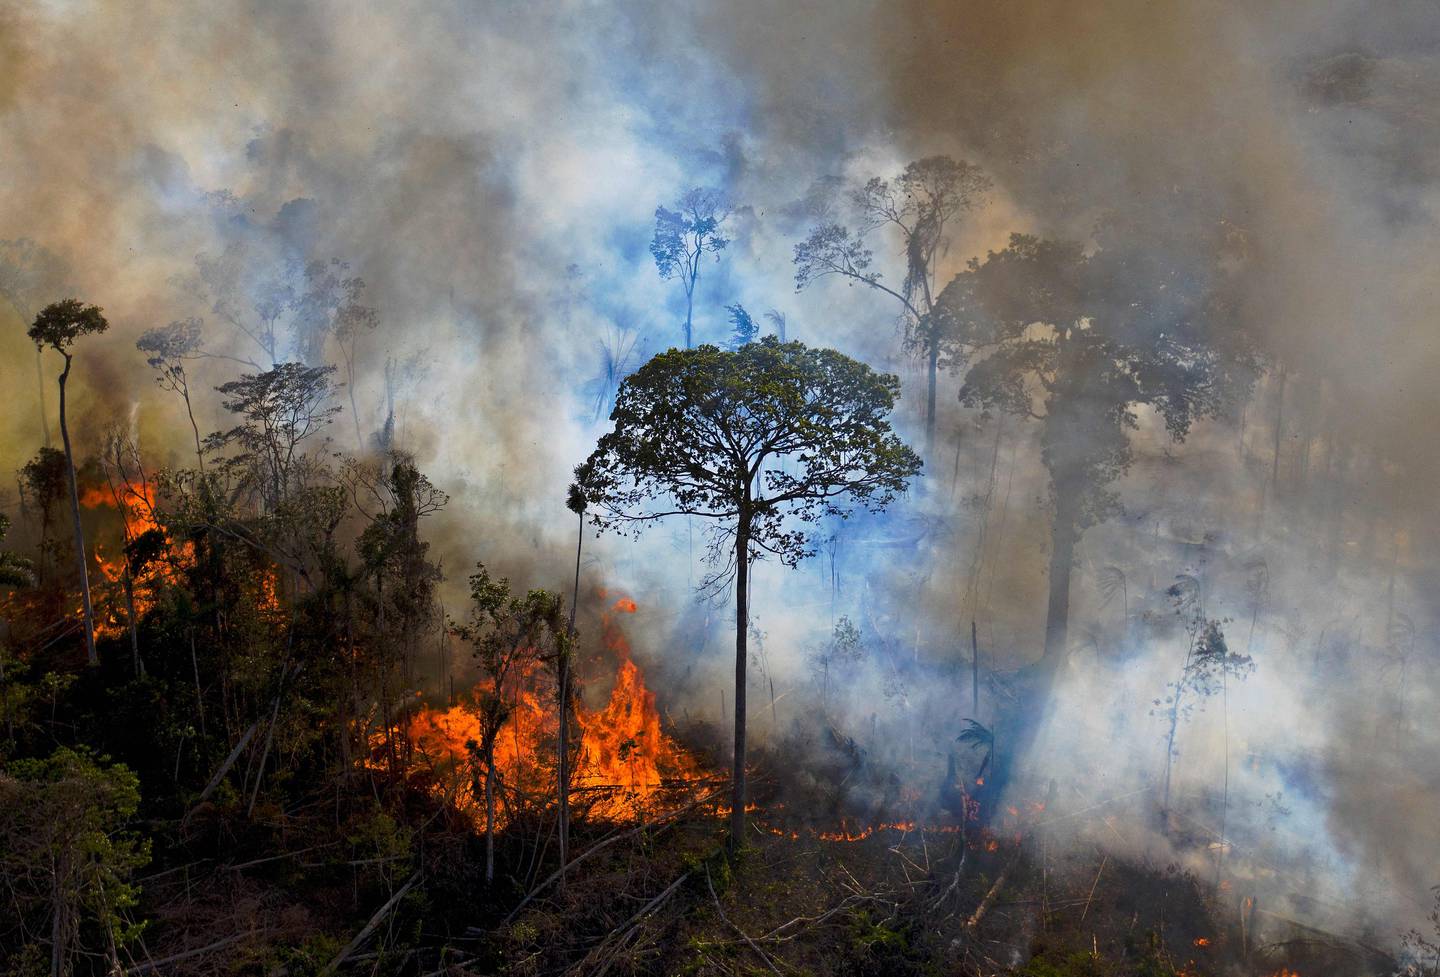 Den omfattende avskogingen i Latin-Amerika, ikke minst i Amazonas, er en av forklaringene på at mange dyrebestander der er i voldsom tilbakegang. Regnskogen ødelegges blant annet ved påsatte branner for skaffe arealer til jordbruk, i forbindelse med gruvedrift og for tømmerets del. Bildet viser en ulovlig påsatt brann i Brazil i 2020.